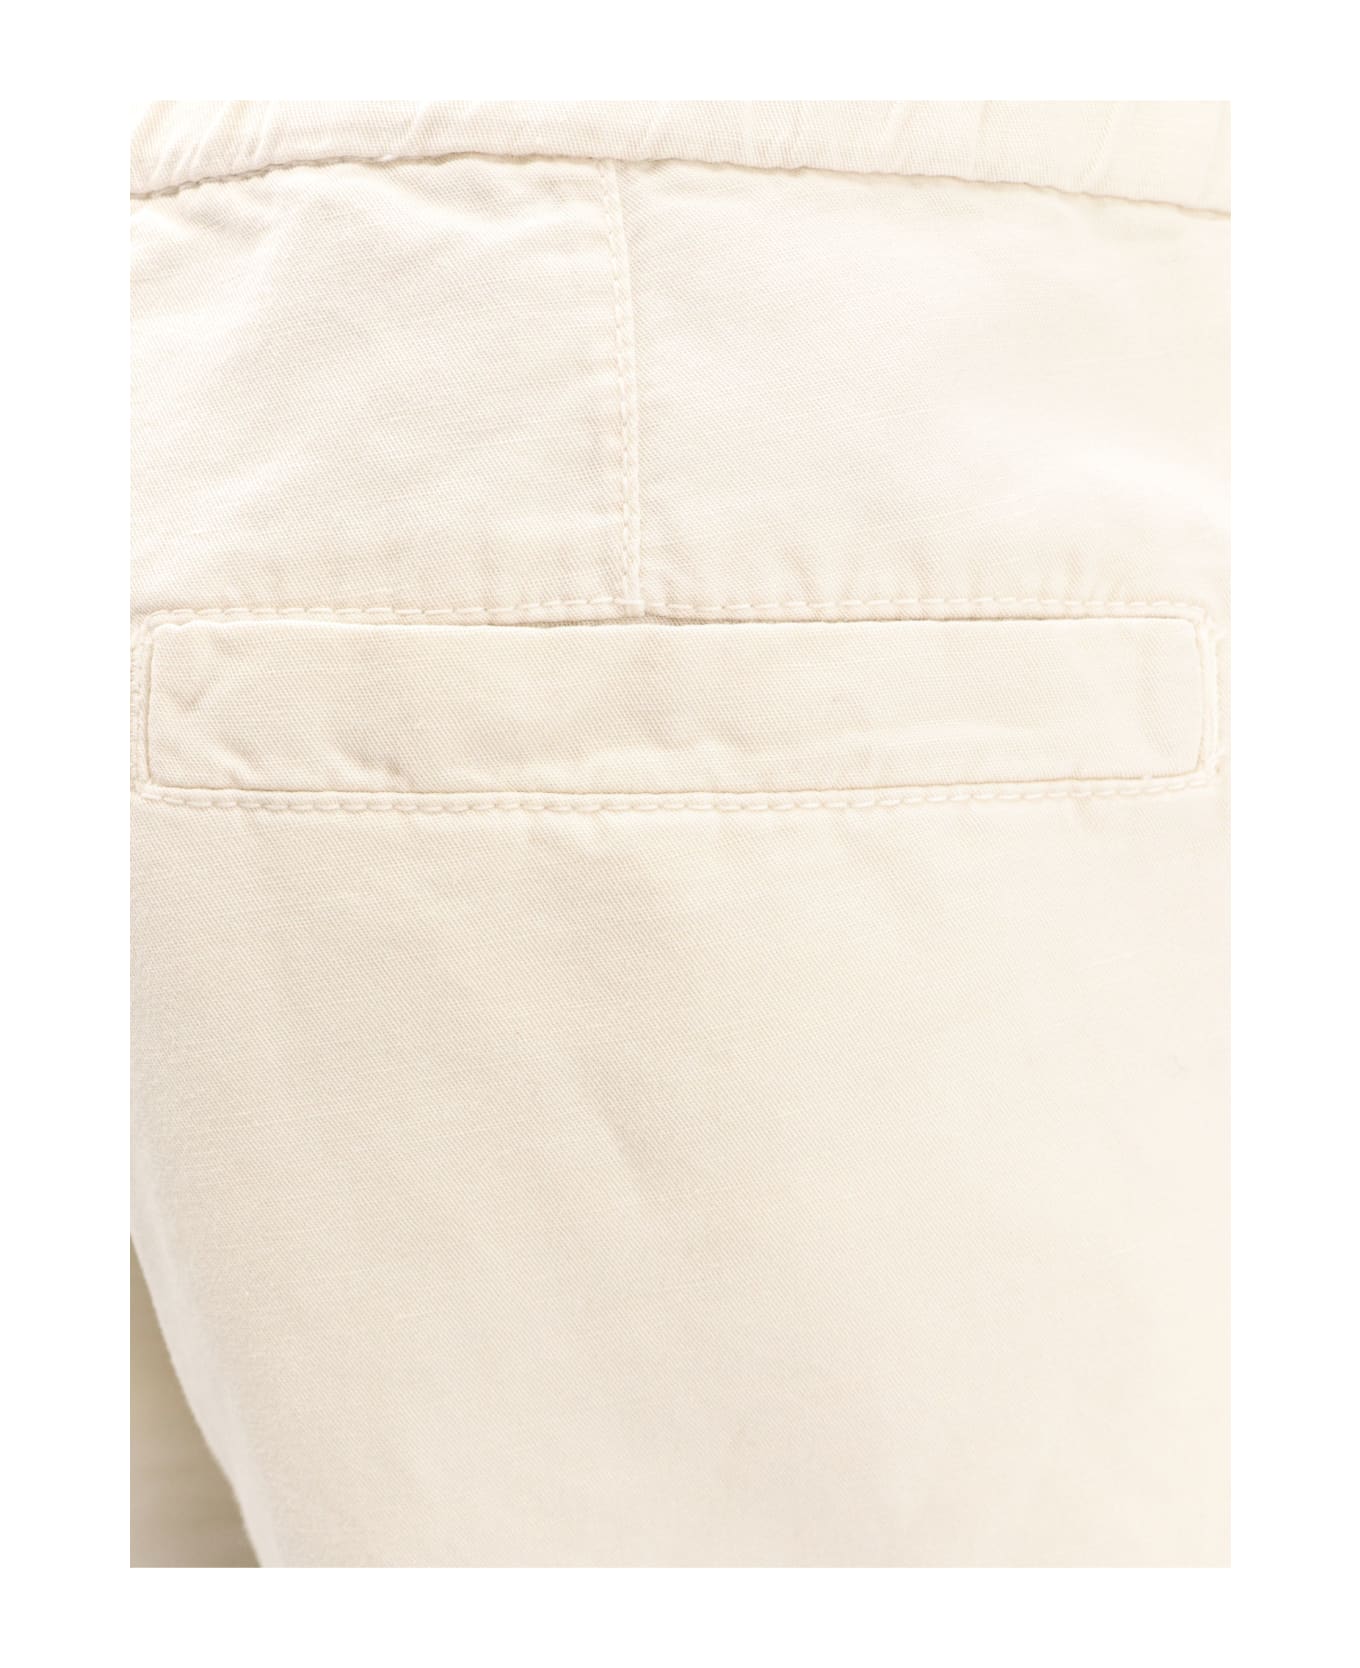 Brunello Cucinelli Bermuda Shorts - White ショートパンツ